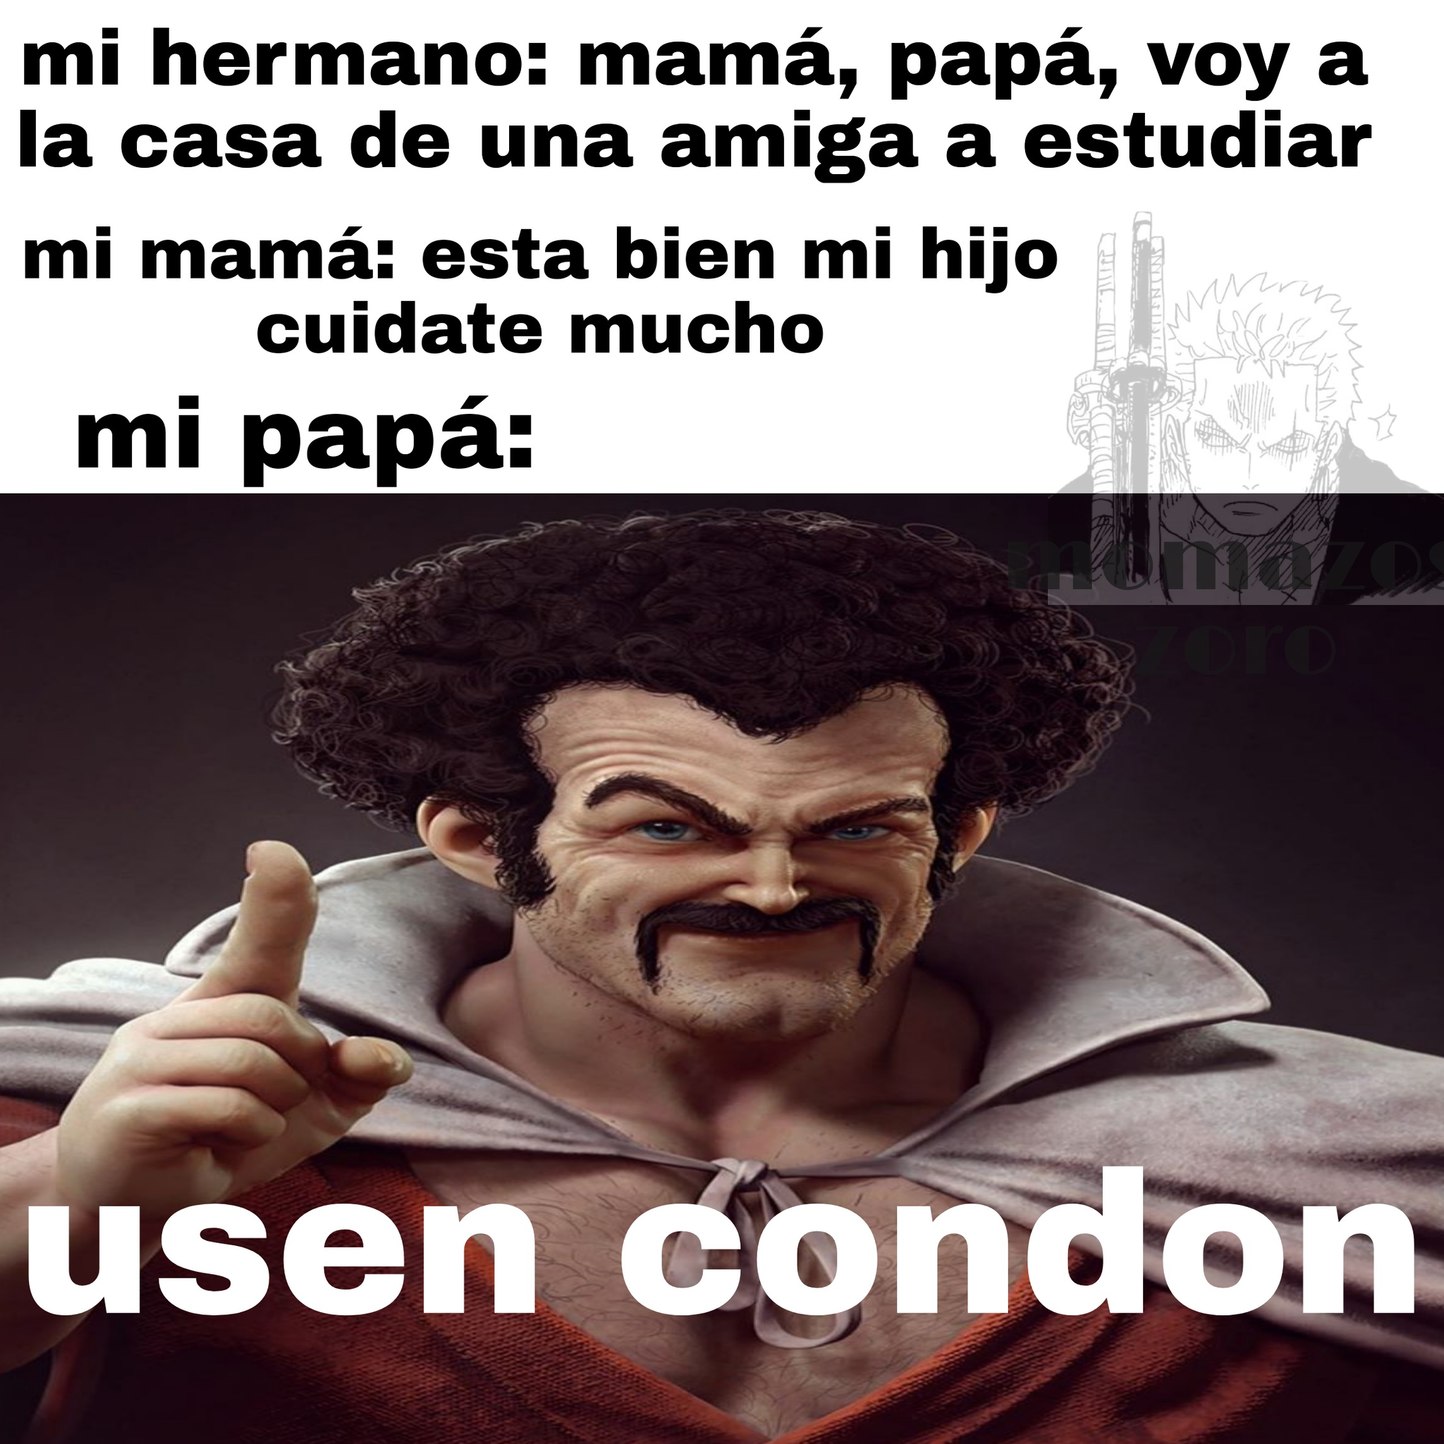 Usen condon - meme